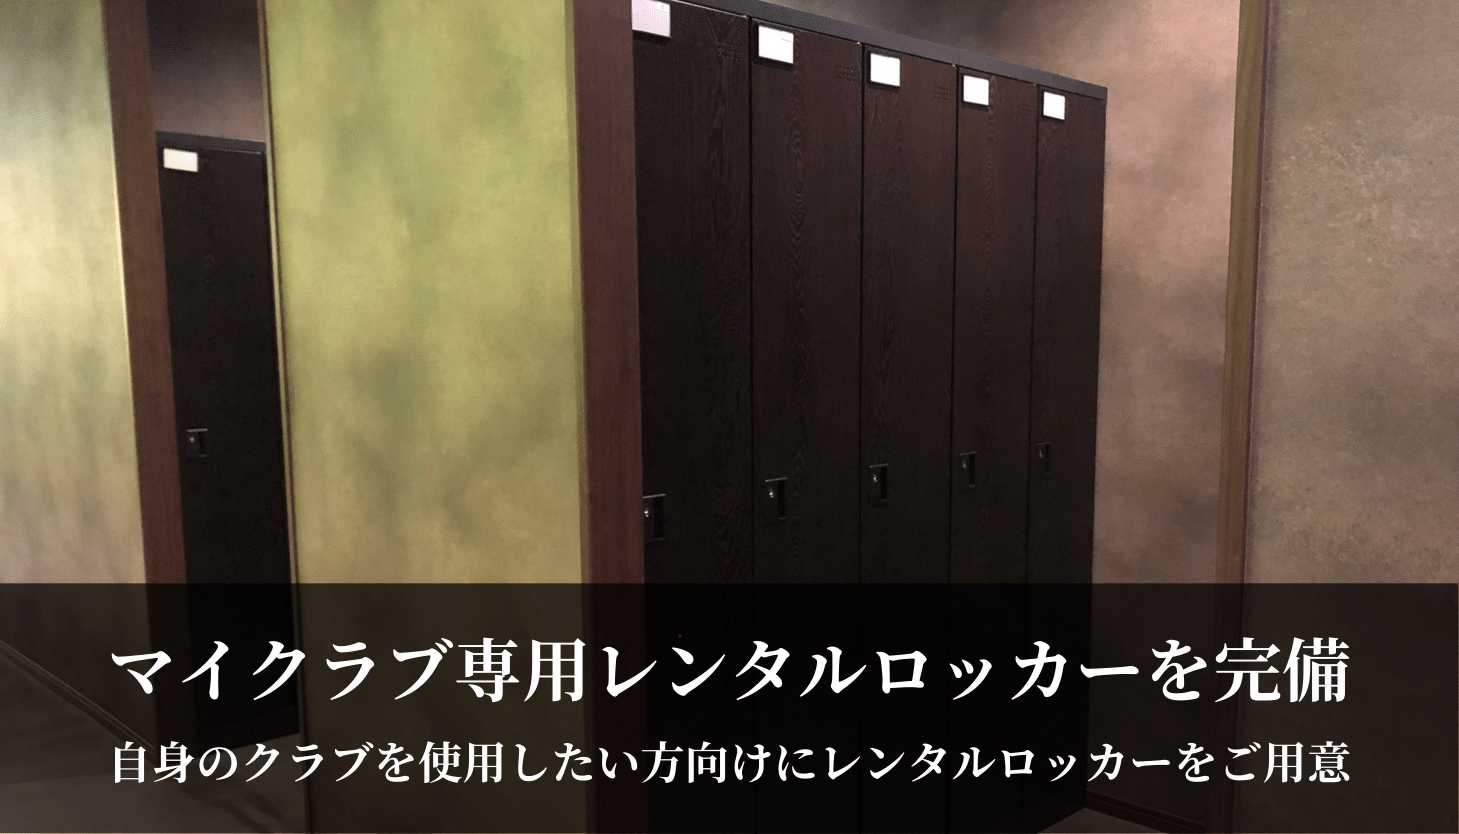 新大阪ゴルフラウンジザイセルフTHYSELFマイクラブ専用レンタルロッカーを完備